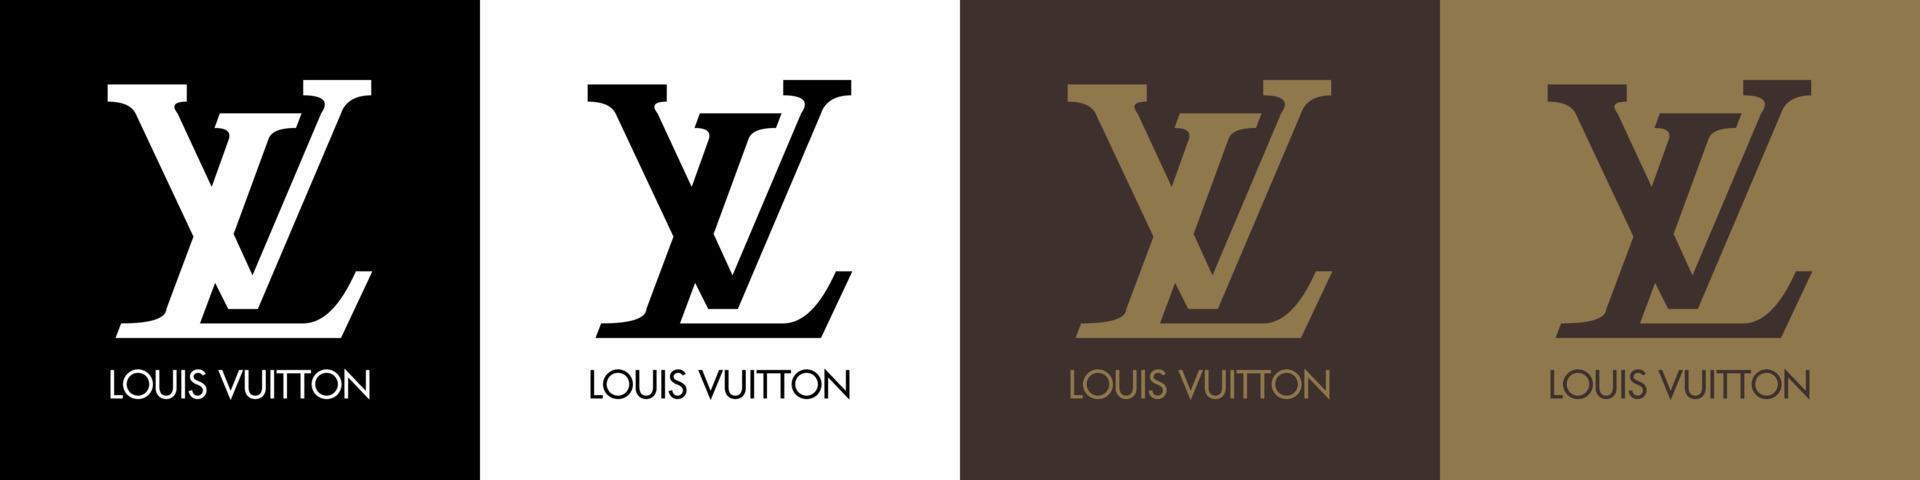 Louis vuitton logo - Louis vuitton icona con carattere tipografico